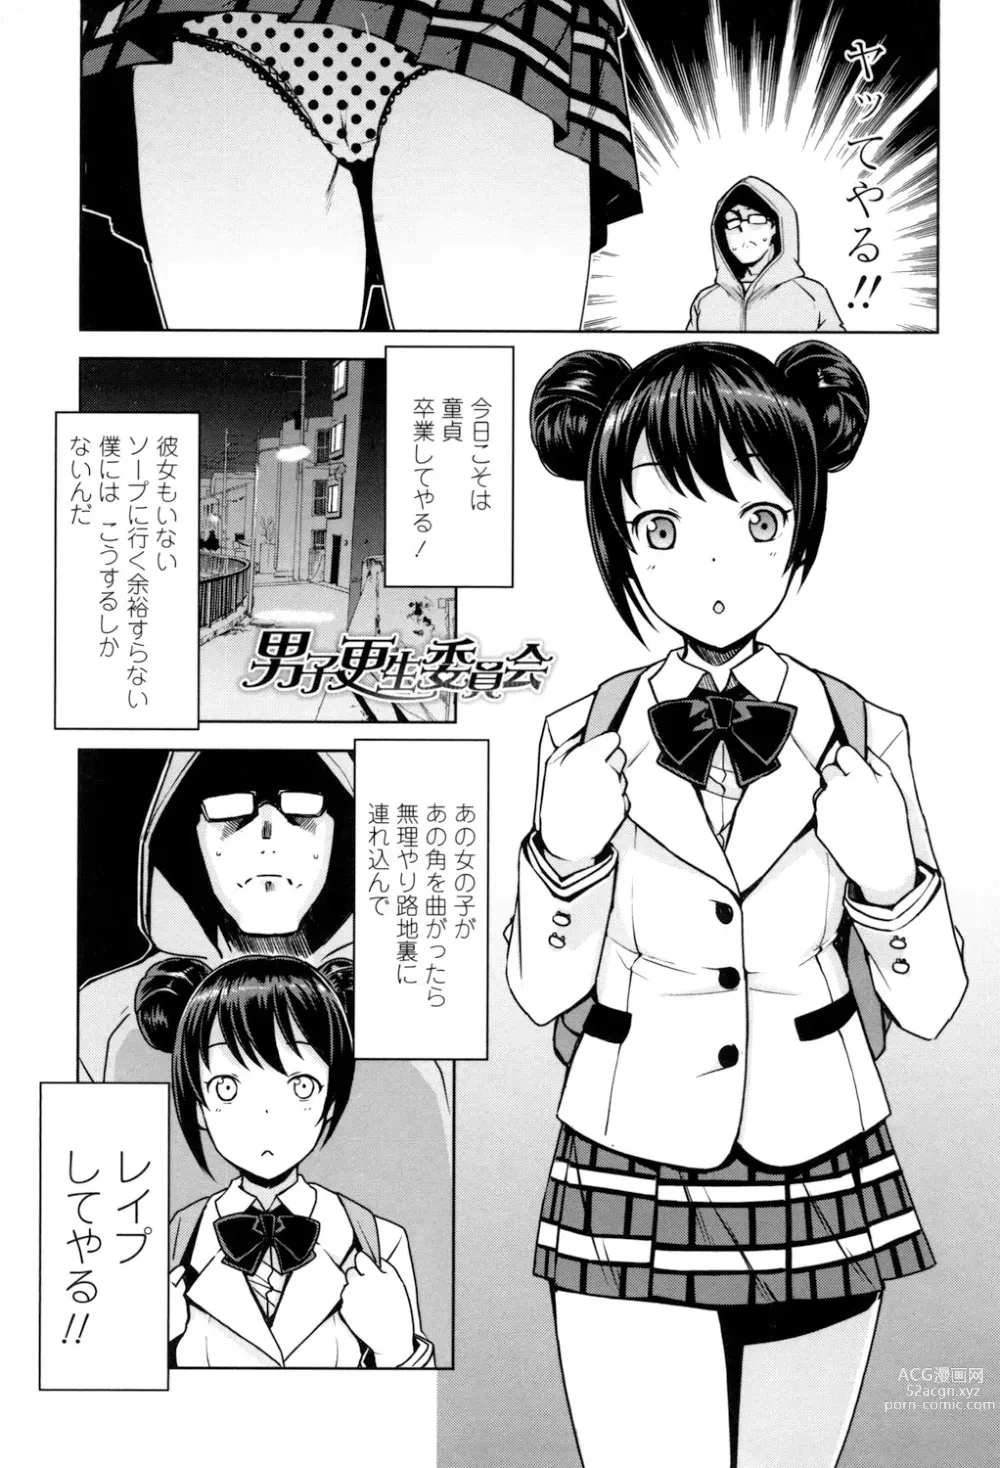 Page 4 of manga Doutei Danshi Kousei Iinkai - Virginity Boy Rebirth Committee